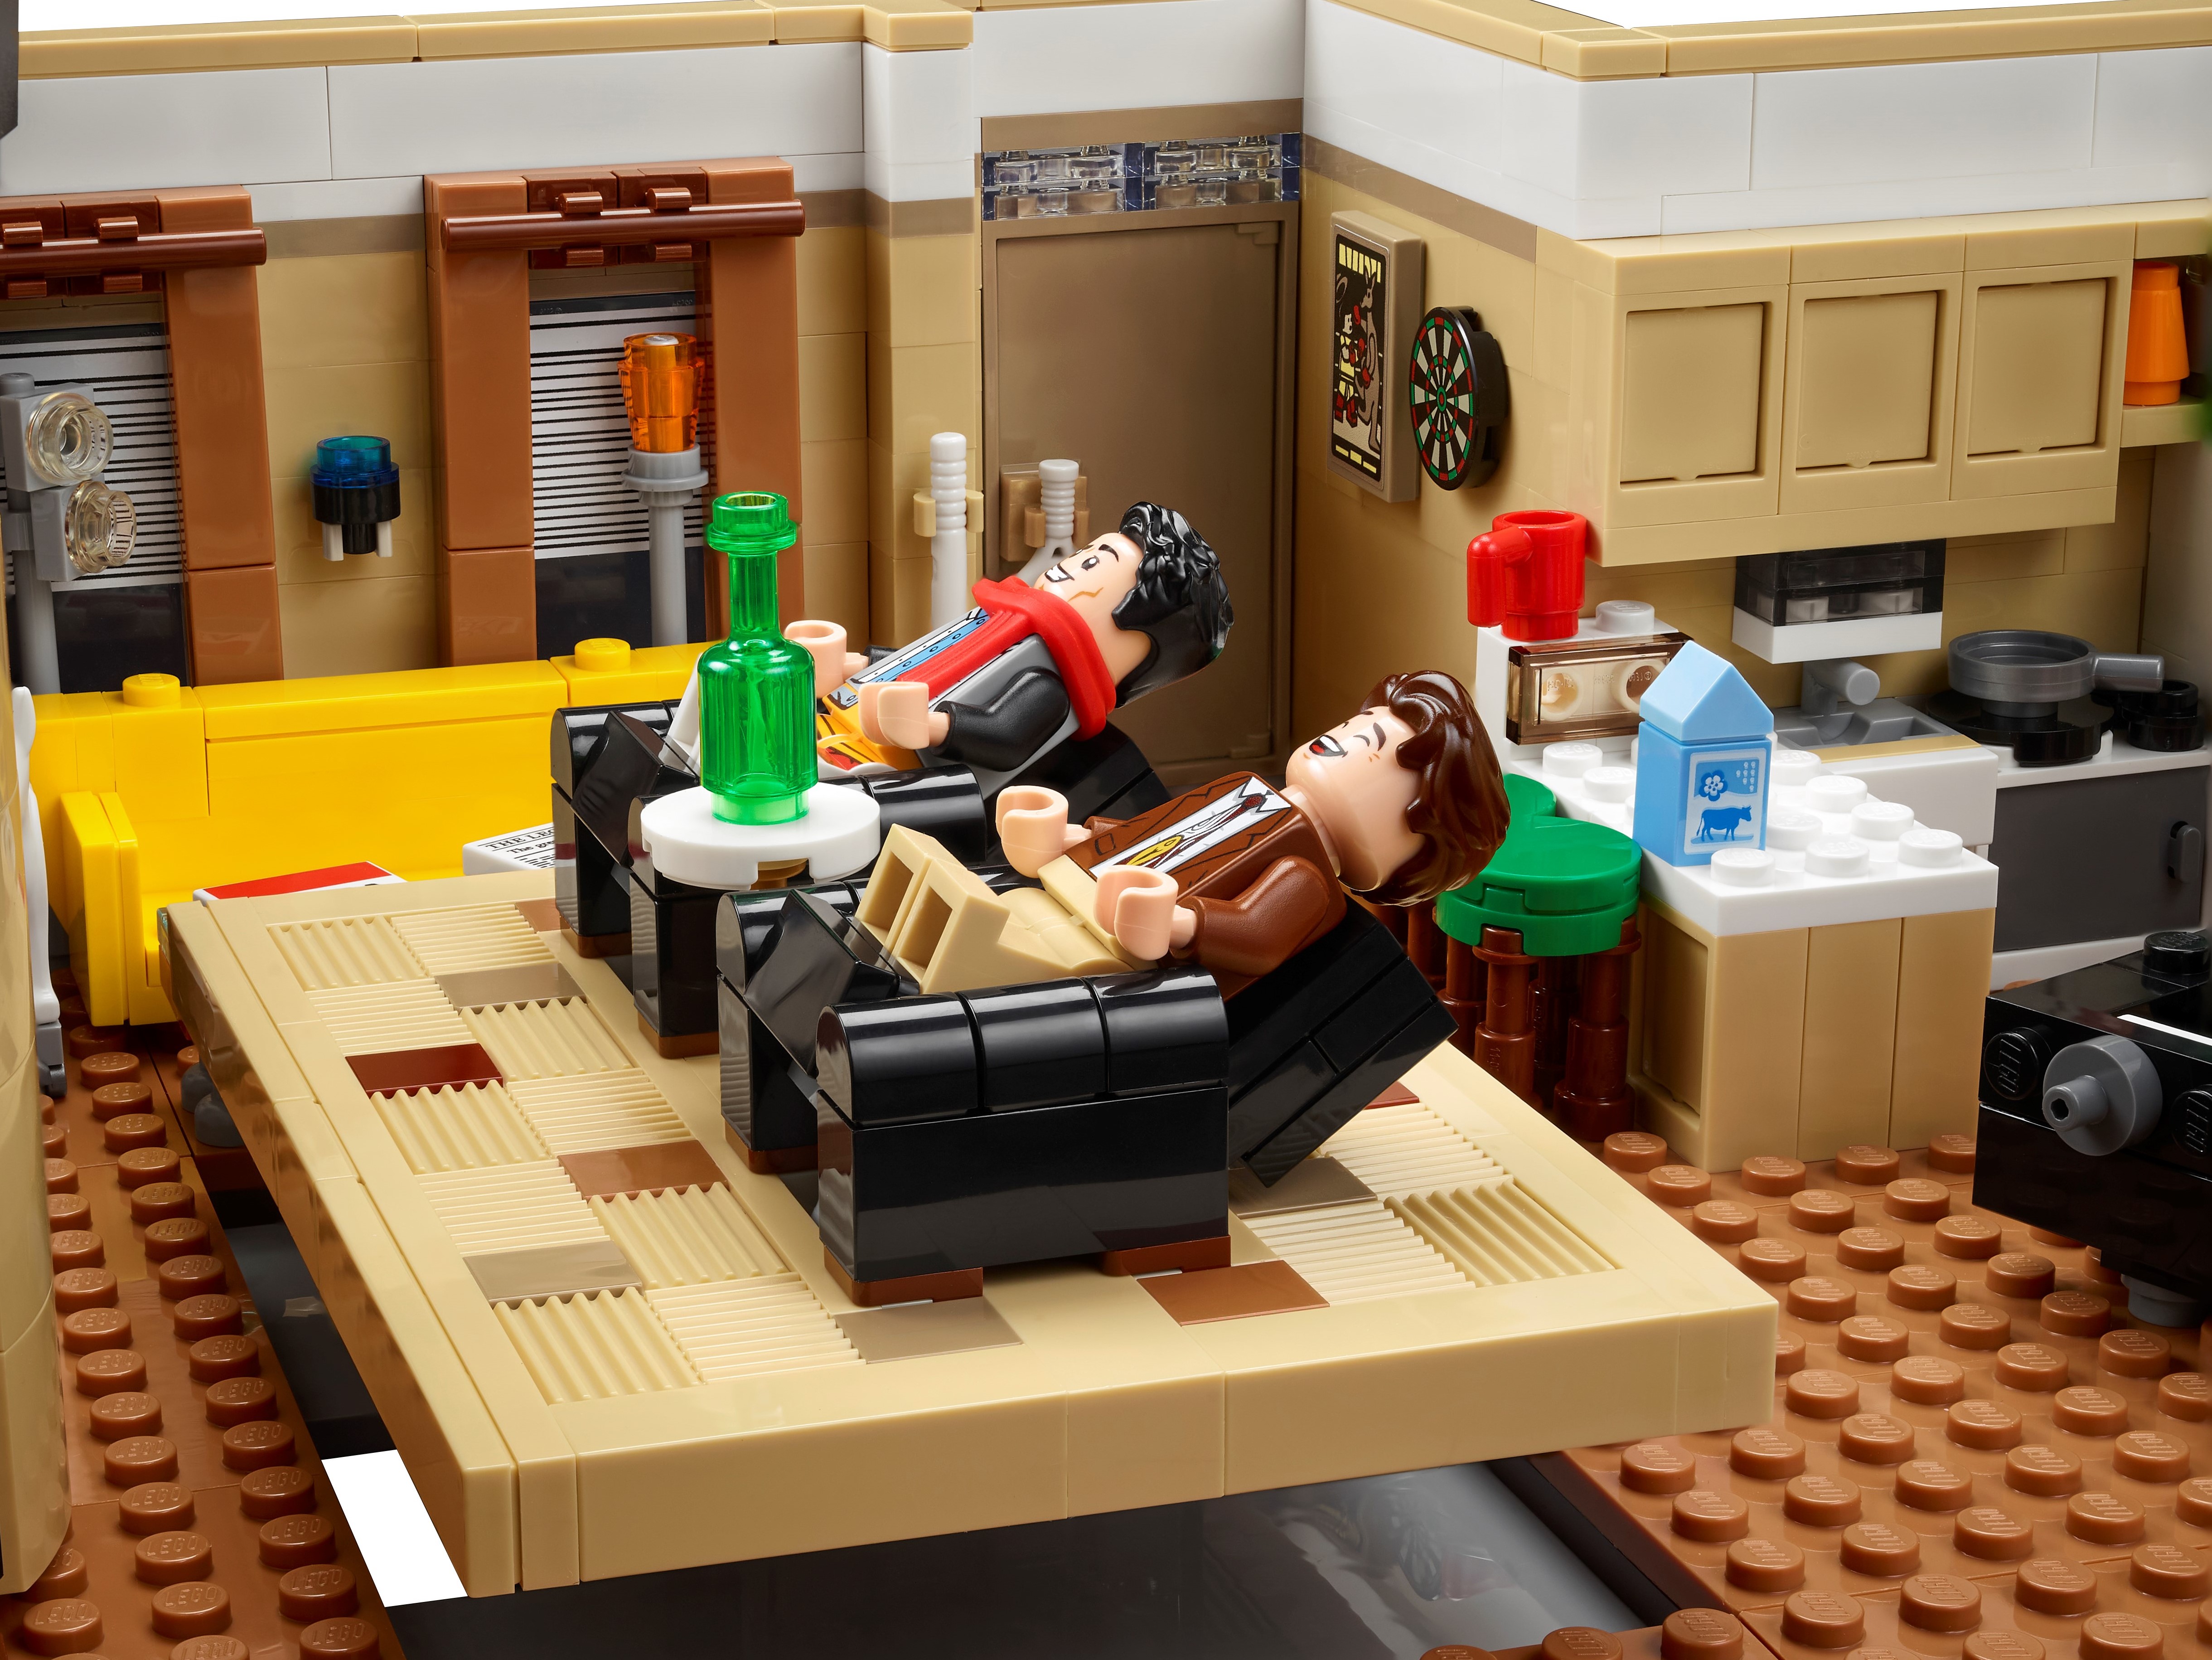 フレンズのアパートメント 10292 | LEGO® Icons |レゴ®ストア公式